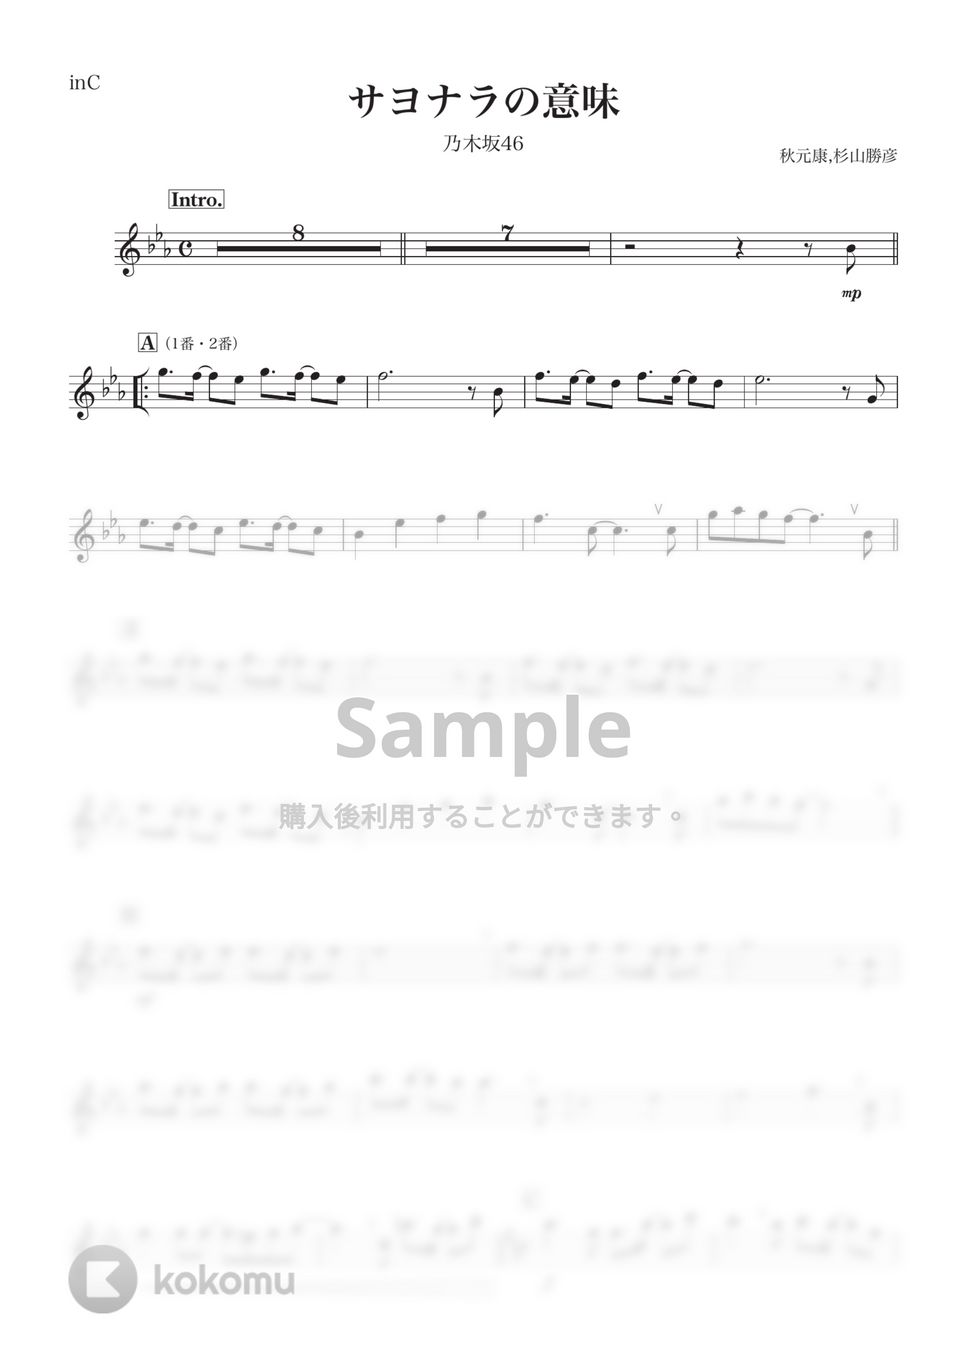 乃木坂46 - サヨナラの意味 (C) by kanamusic